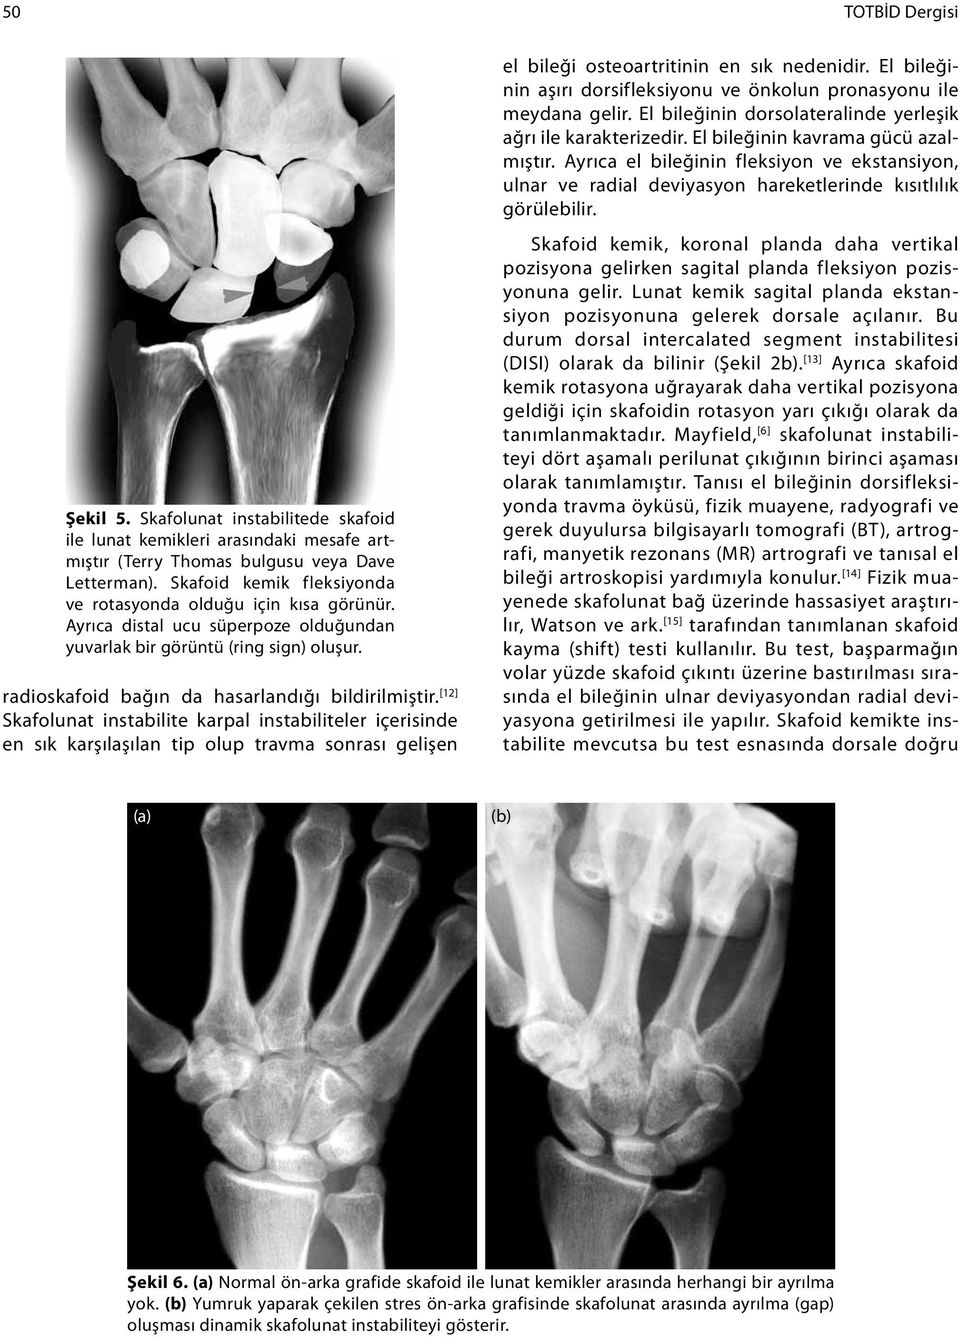 [12] Skafolunat instabilite karpal instabiliteler içerisinde en sık karşılaşılan tip olup travma sonrası gelişen el bileği osteoartritinin en sık nedenidir.